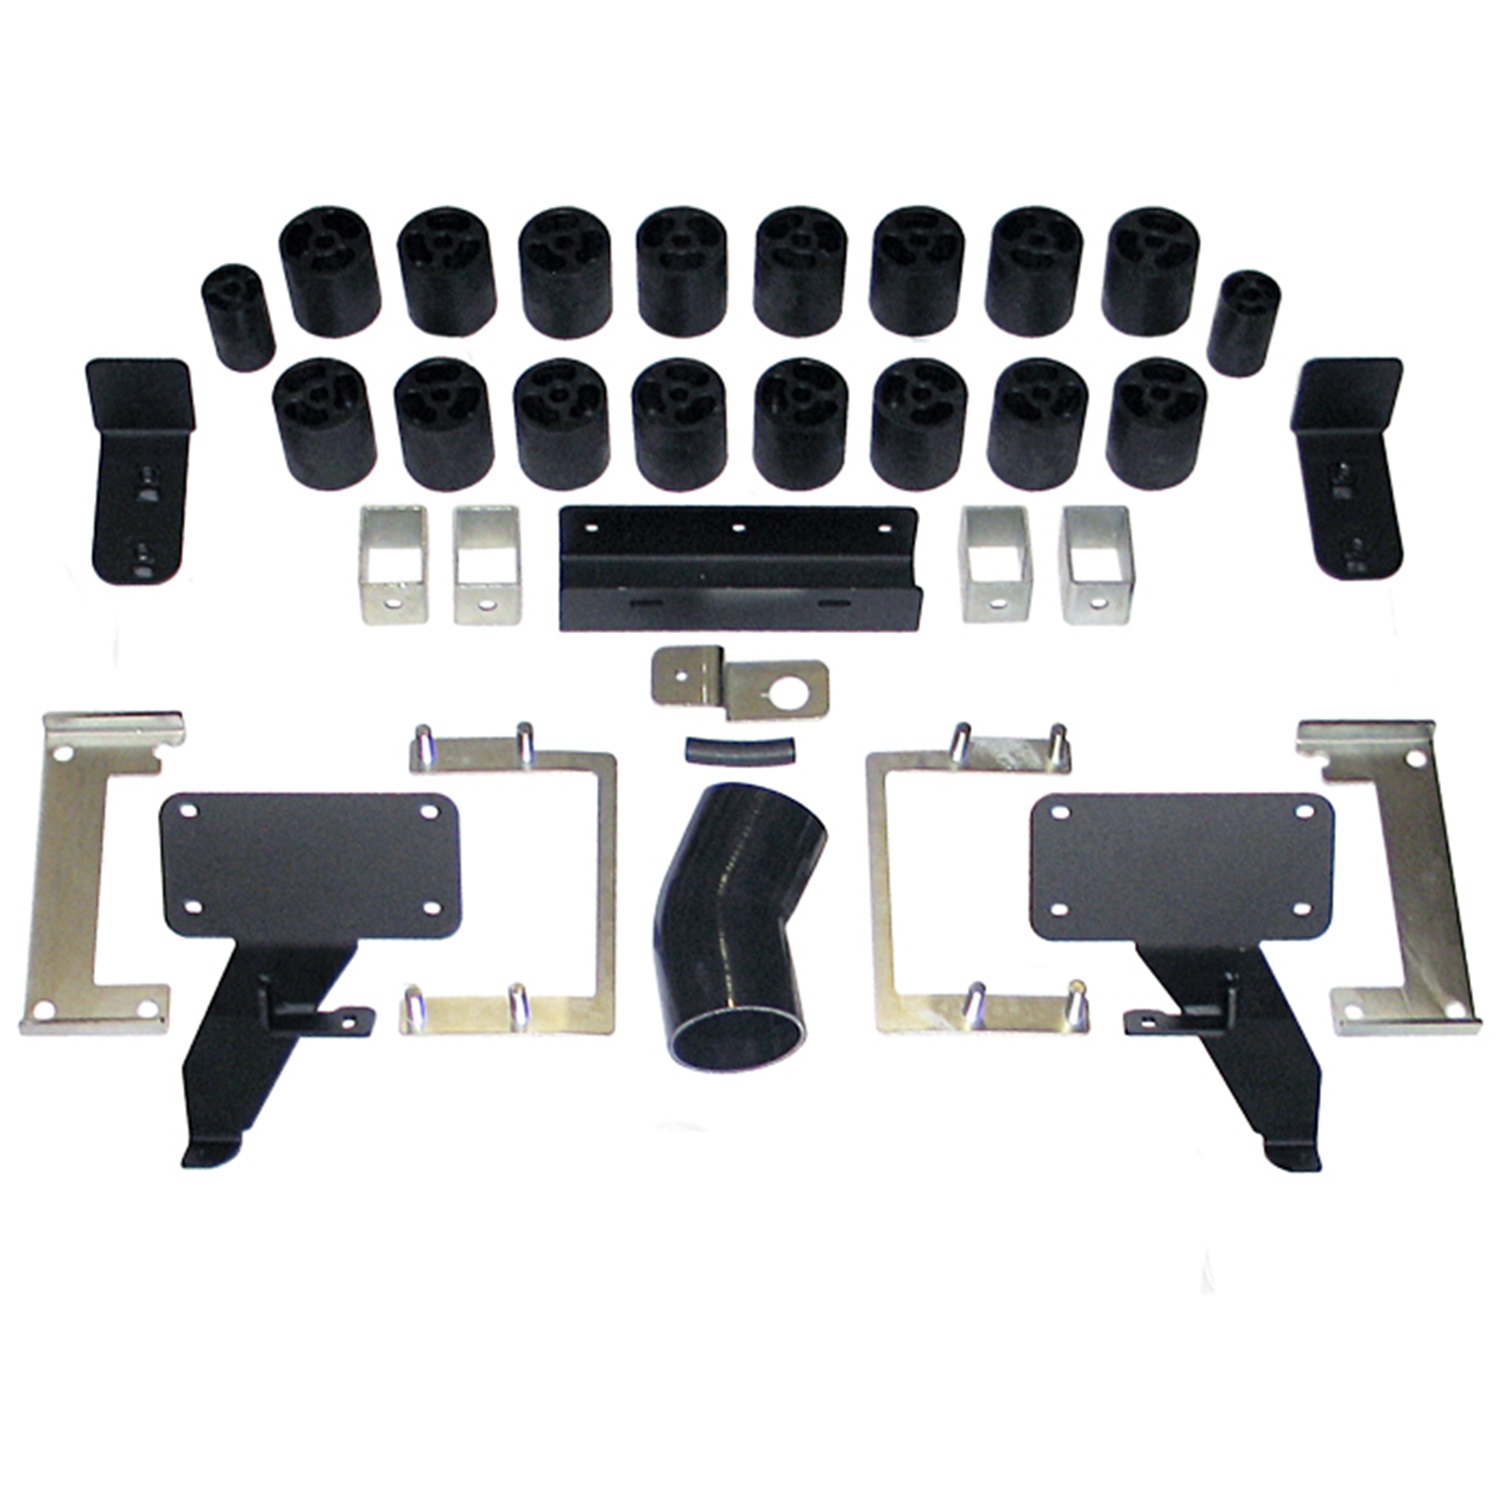 Performance Accessories Performance Accessories 70103 Body Lift Kit Fits 11-14 F-150